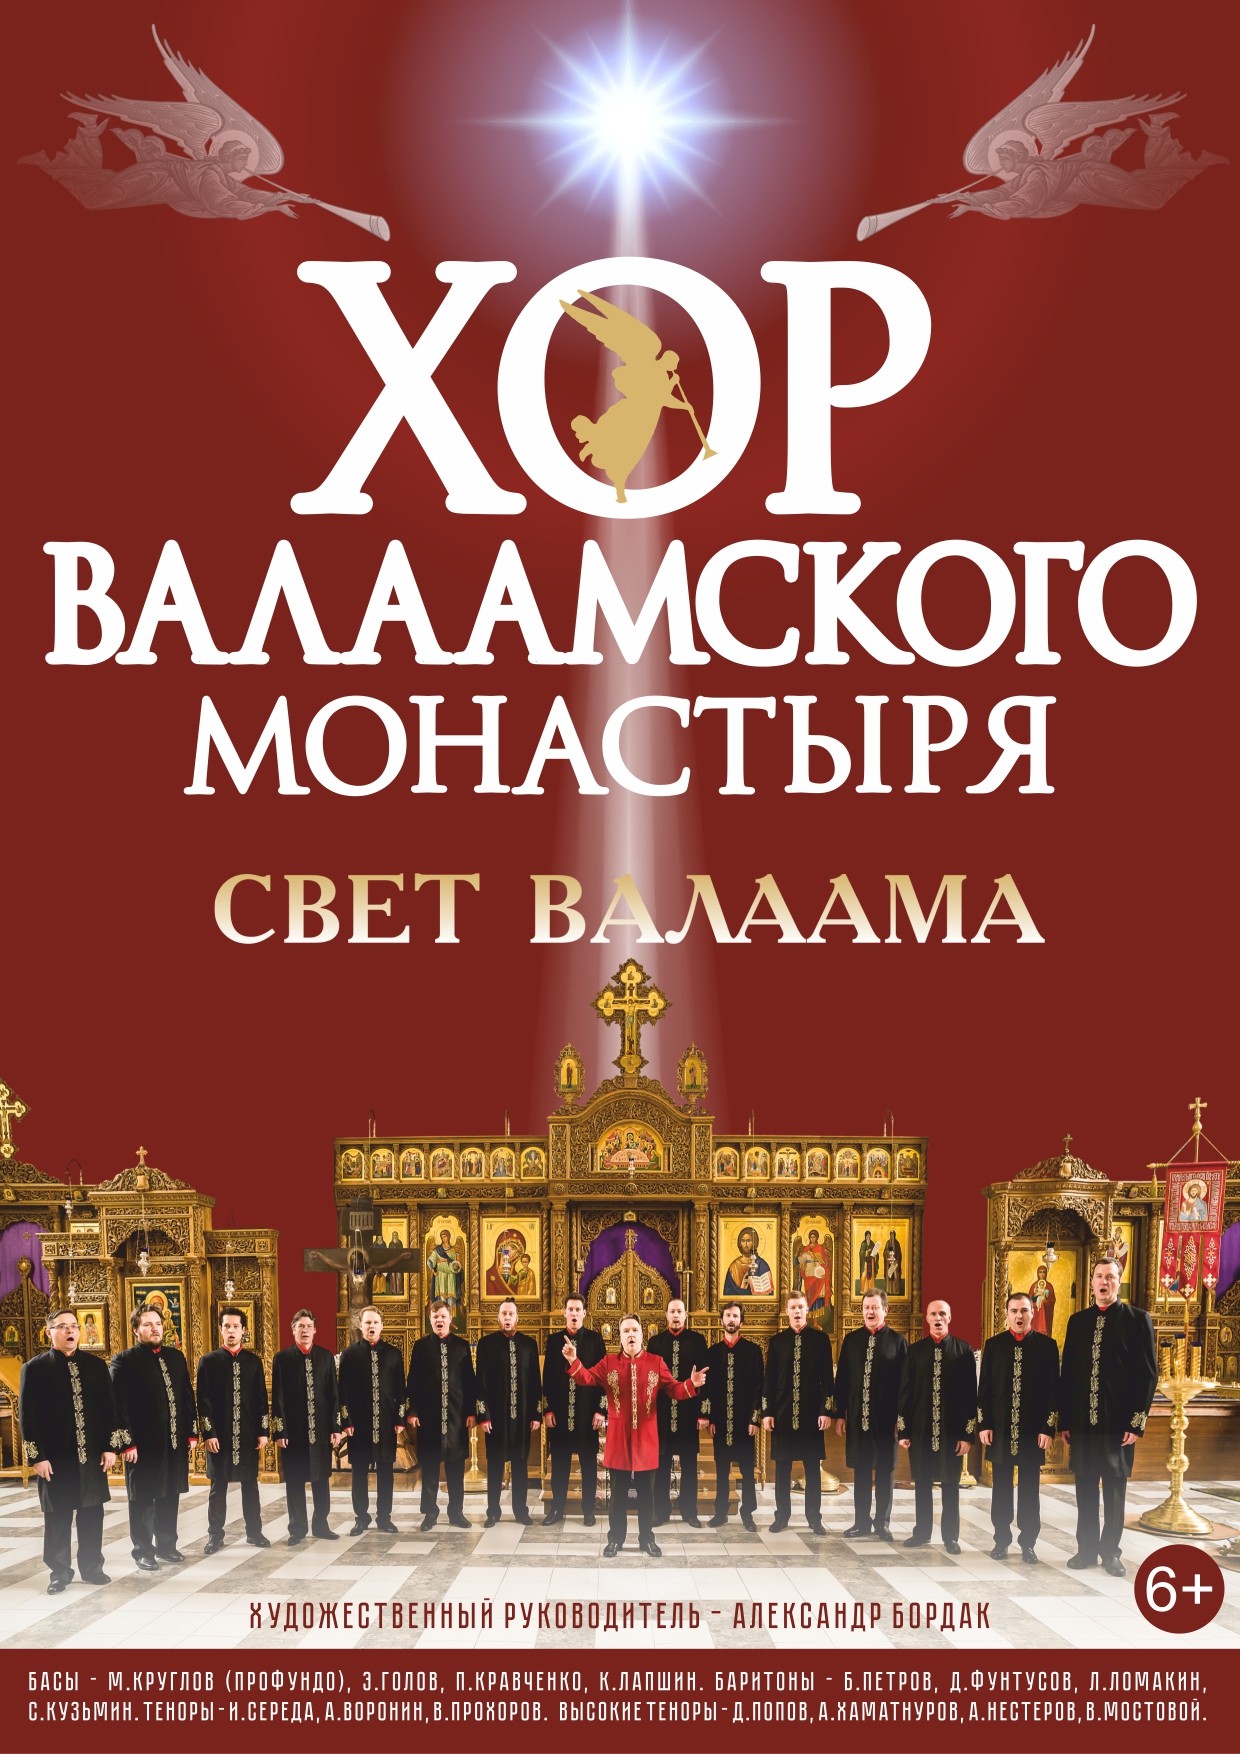 Концерт Хор Валаамского монастыря "Великая любовь"